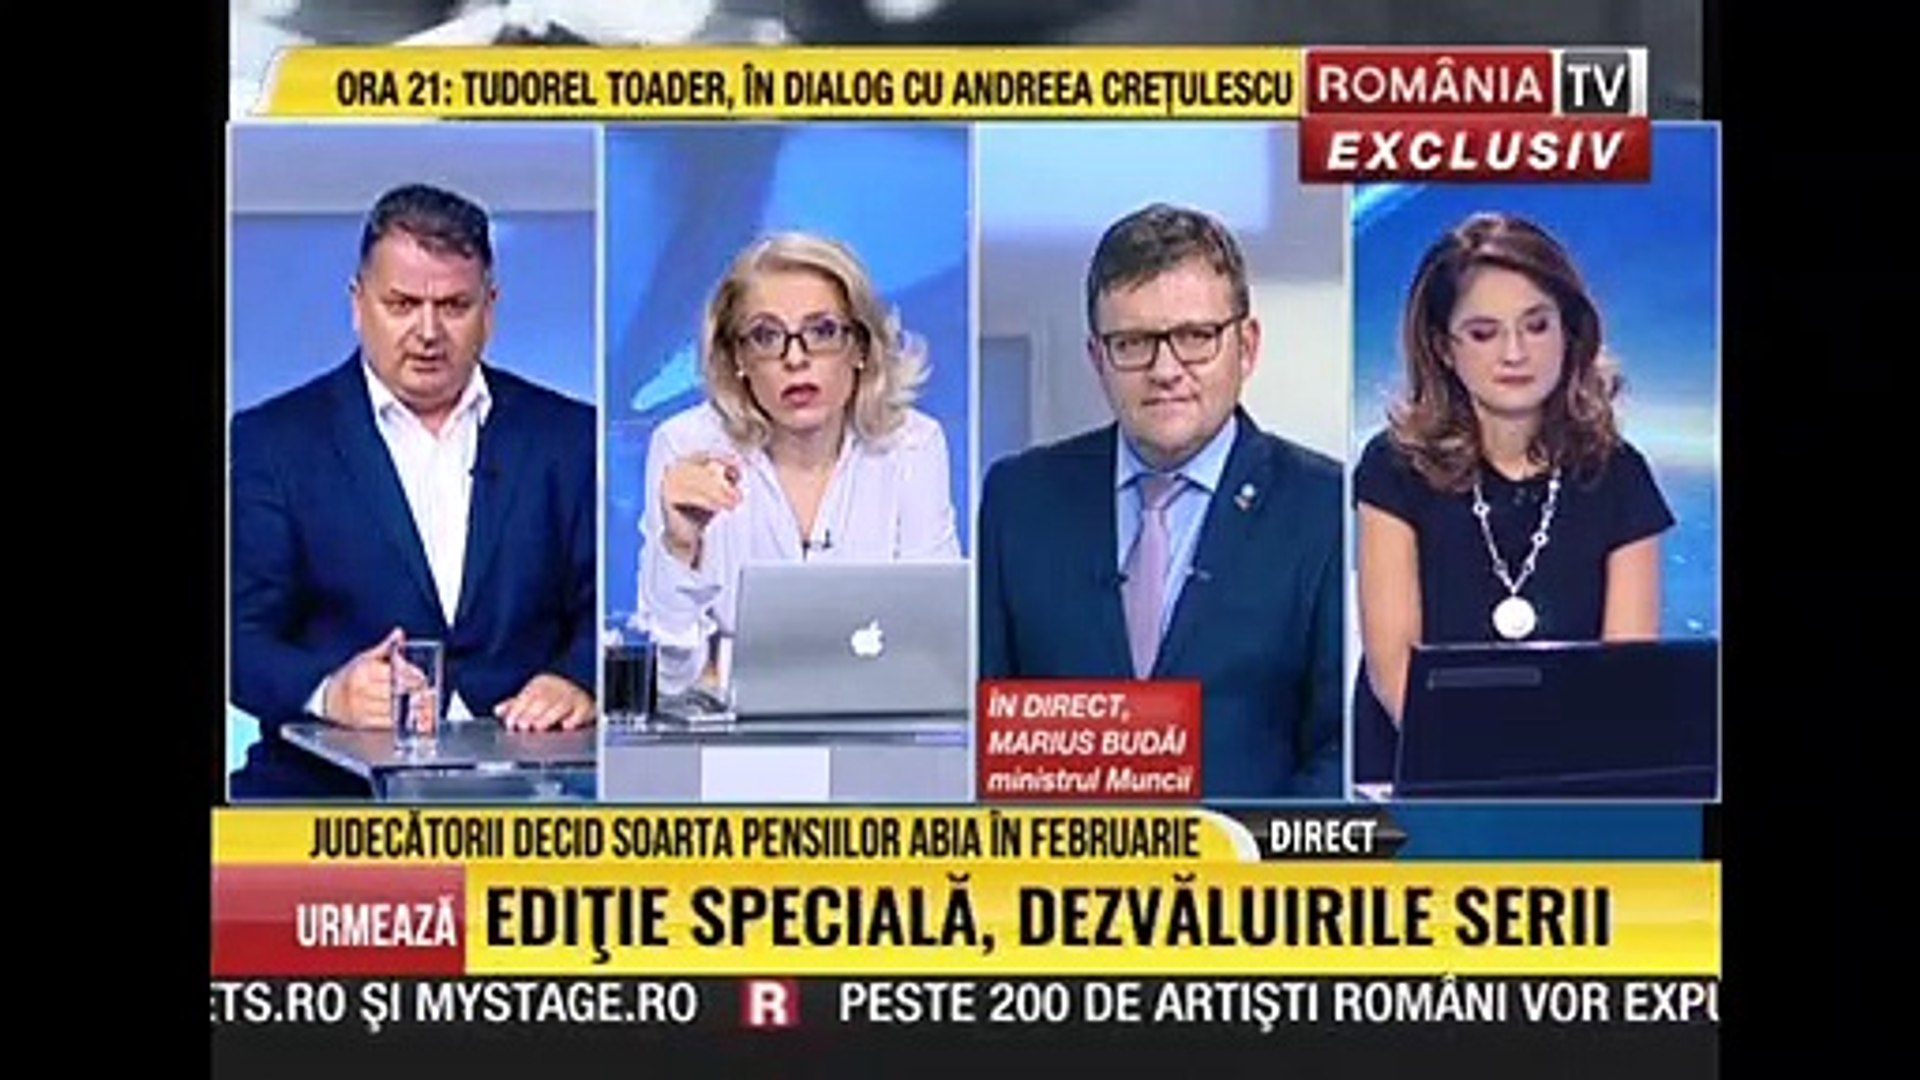 ULTIMA ORA ROMANIA TV 27 DECEMBRIE 2018 : JUDECATORII DECID SOARTA  PENSIILOR ABIA IN FEBRUARIE - video Dailymotion